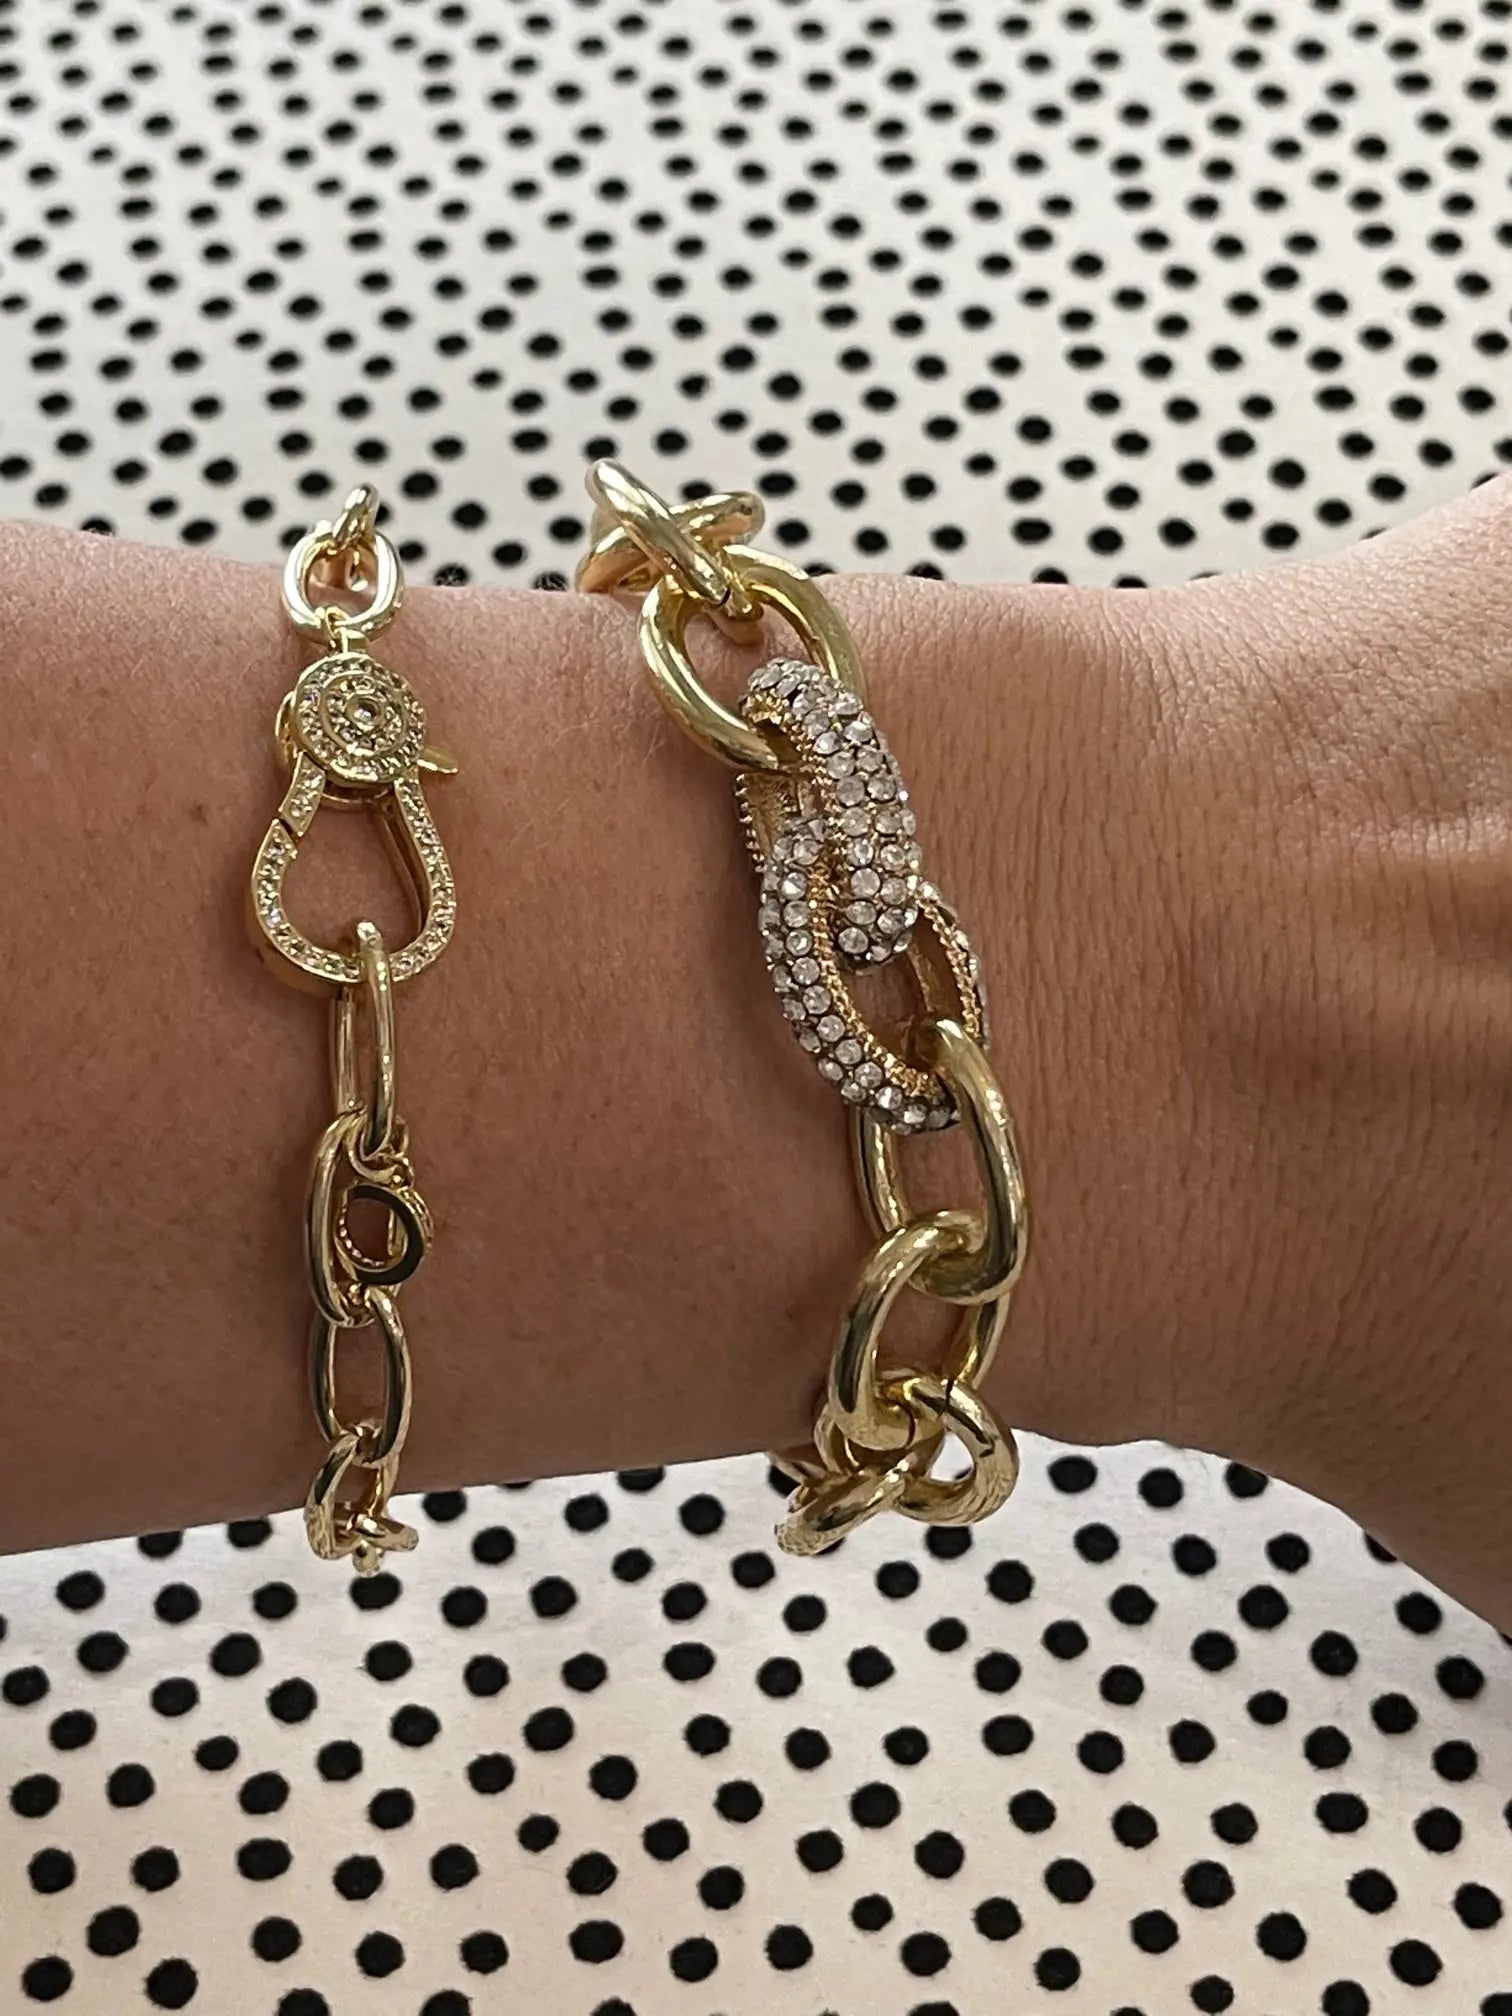 Penny Chain Bracelet - ladymaesboutique